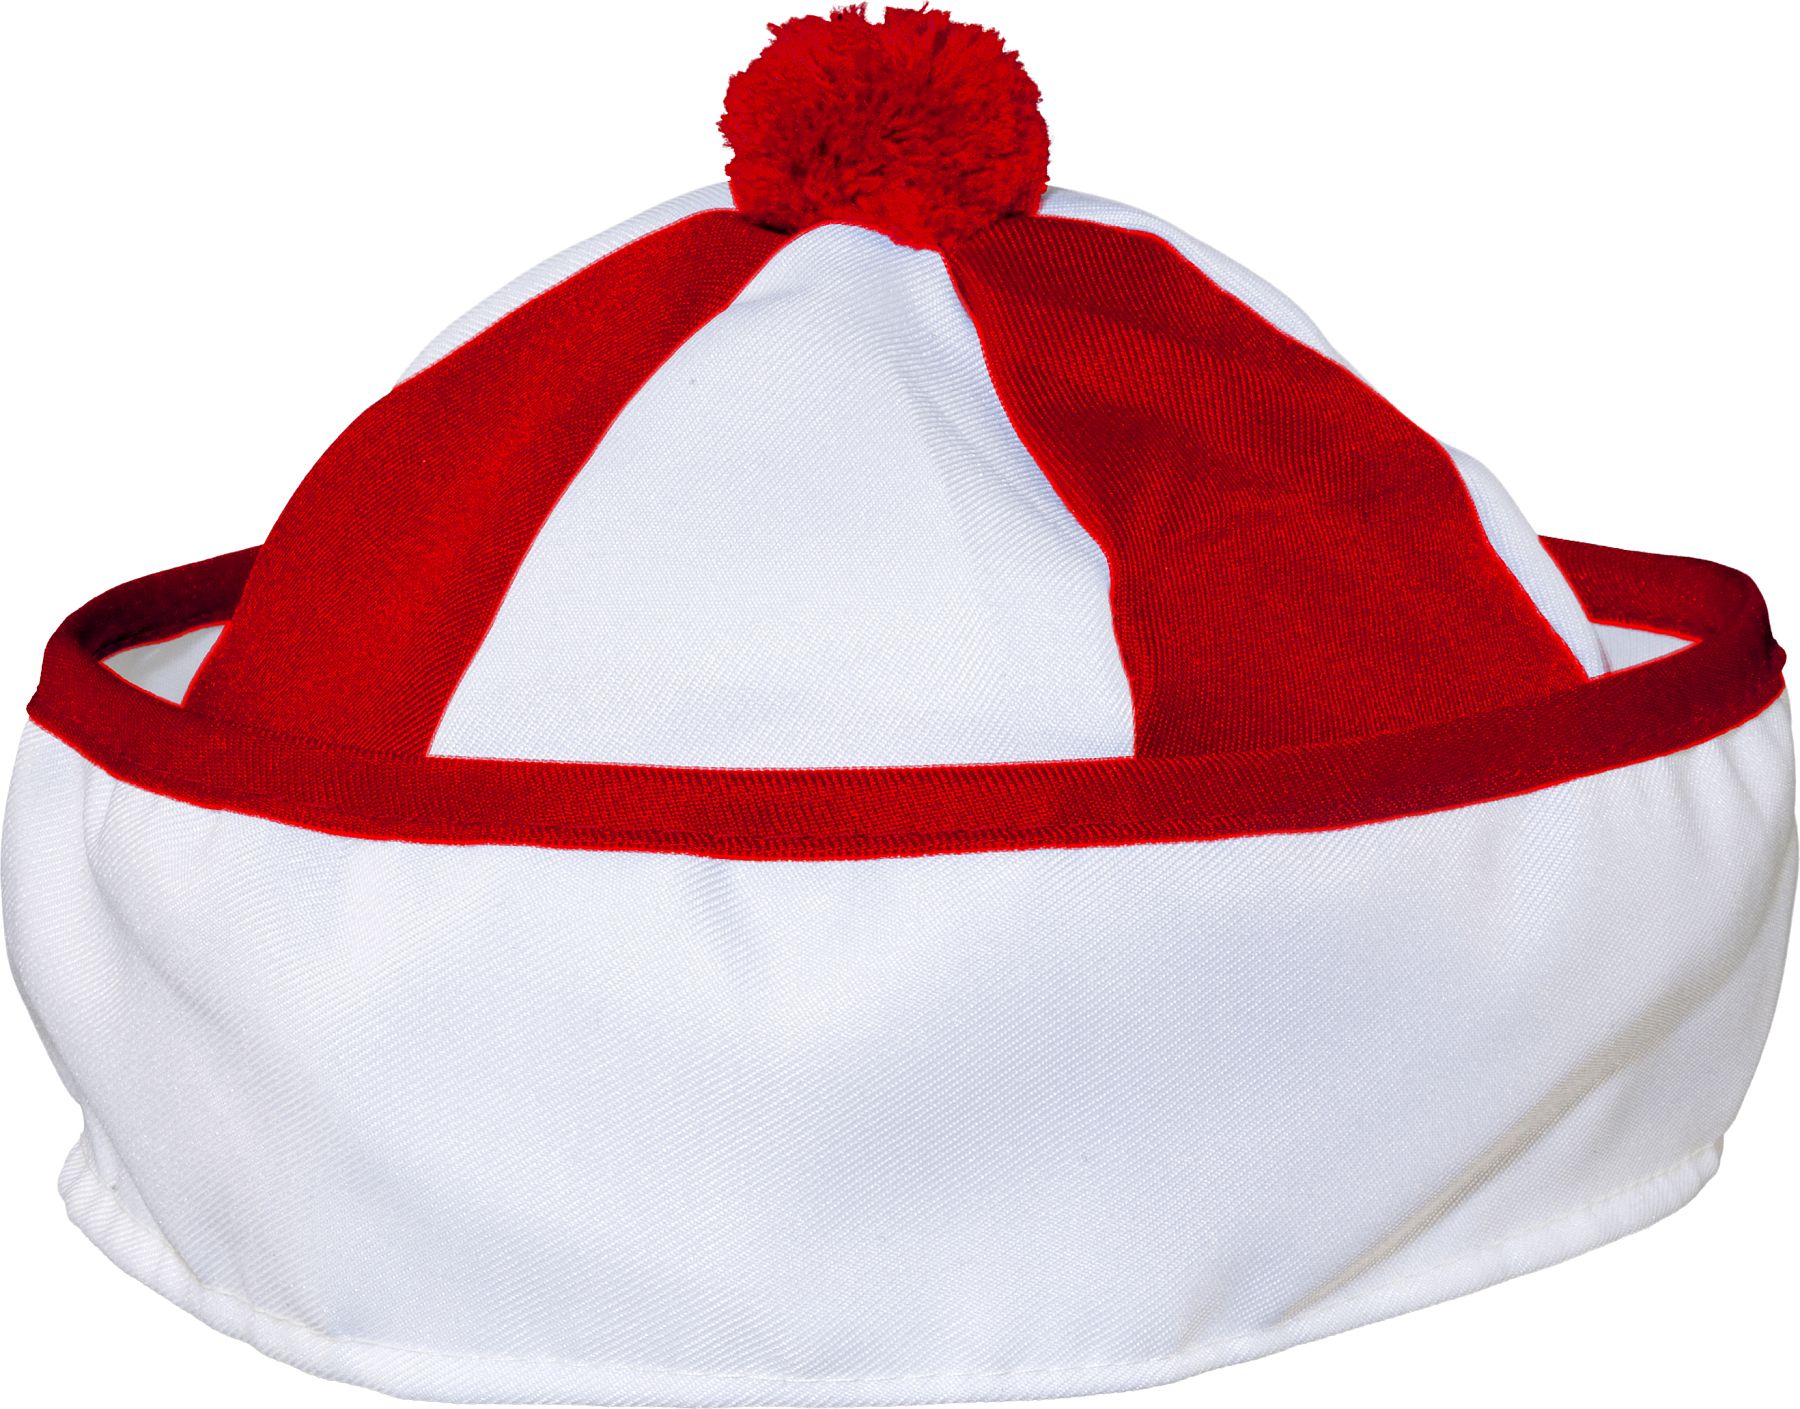 Sailor cap, red/white